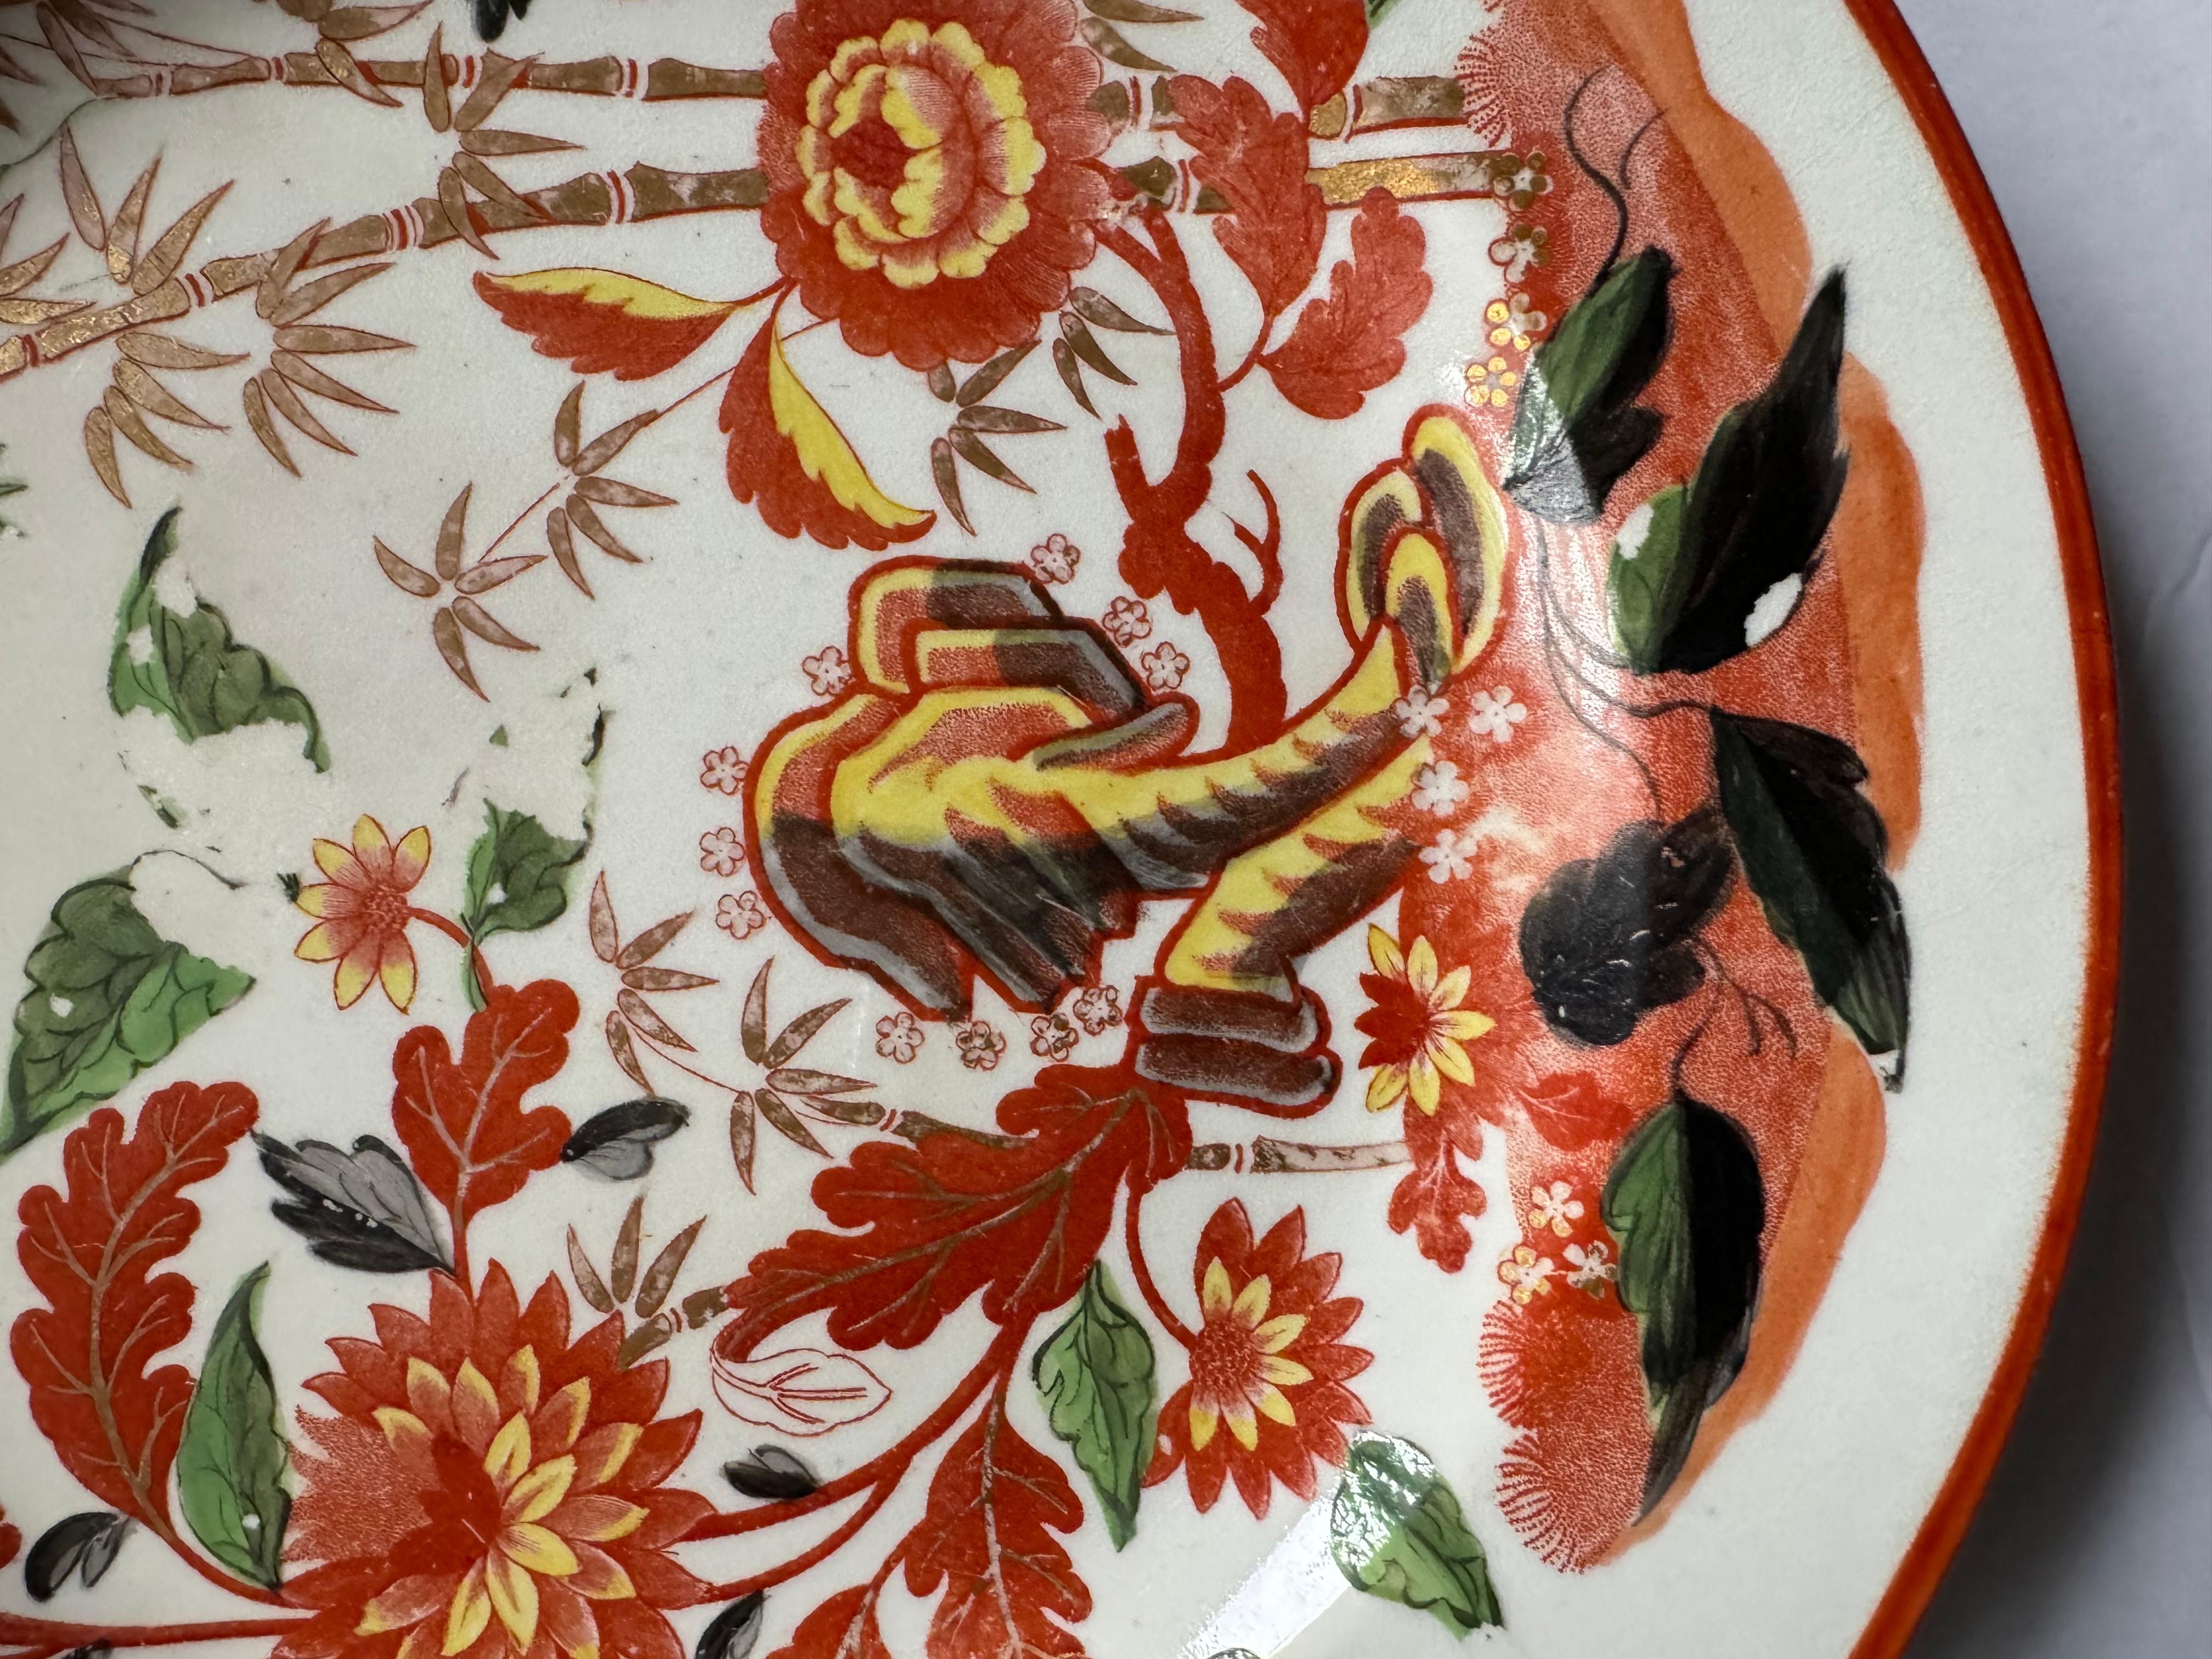 Un ensemble de quatre (4) assiettes en porcelaine de Minton, exceptionnellement décorées d'une impression de chauve-souris rouge de fleurs orientales et de branches de bambou, surpeintes d'émaux colorés et complétées par un bord doré.

Fabriqué en